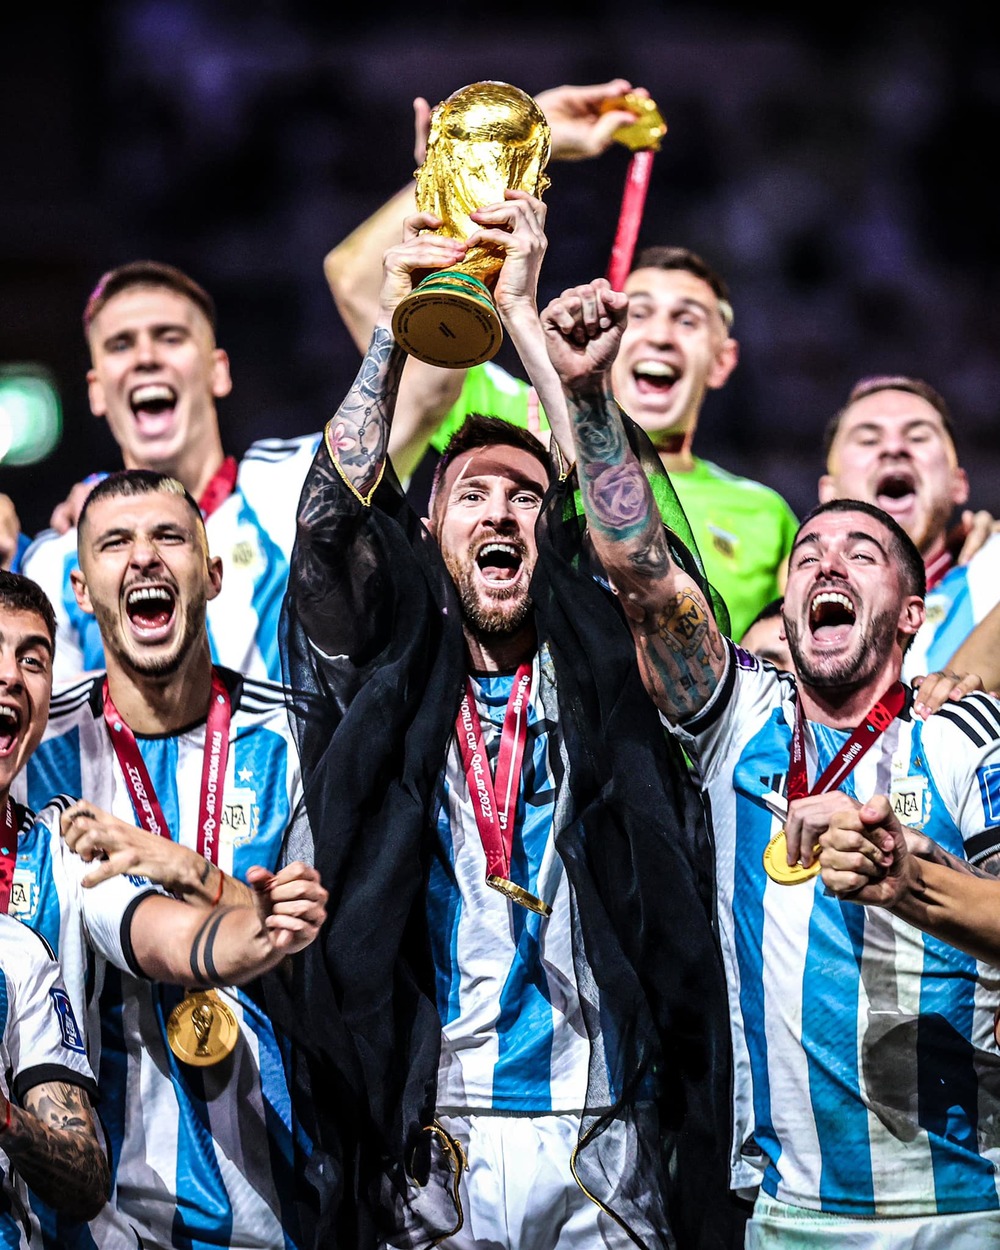 Đội tuyển Argentina, với sự góp mặt của Messi và dàn sao Việt, đã trở thành nhà vô địch World Cup. Hãy cùng chúng tôi chiêm ngưỡng những bước tiến vô cùng ấn tượng của đội tuyển này!